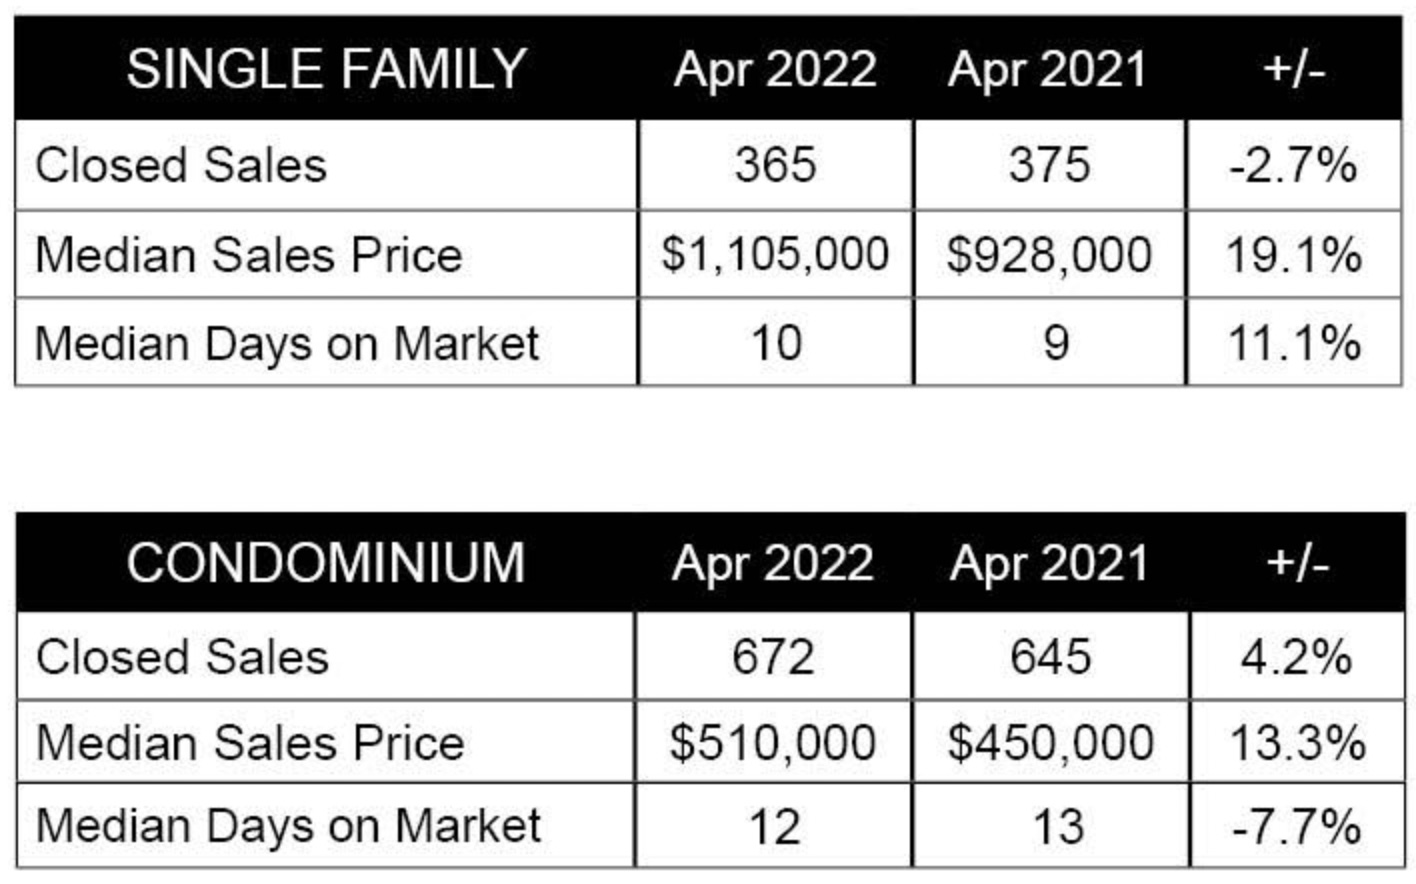 April 2022 - Single Family and Condominium Sales